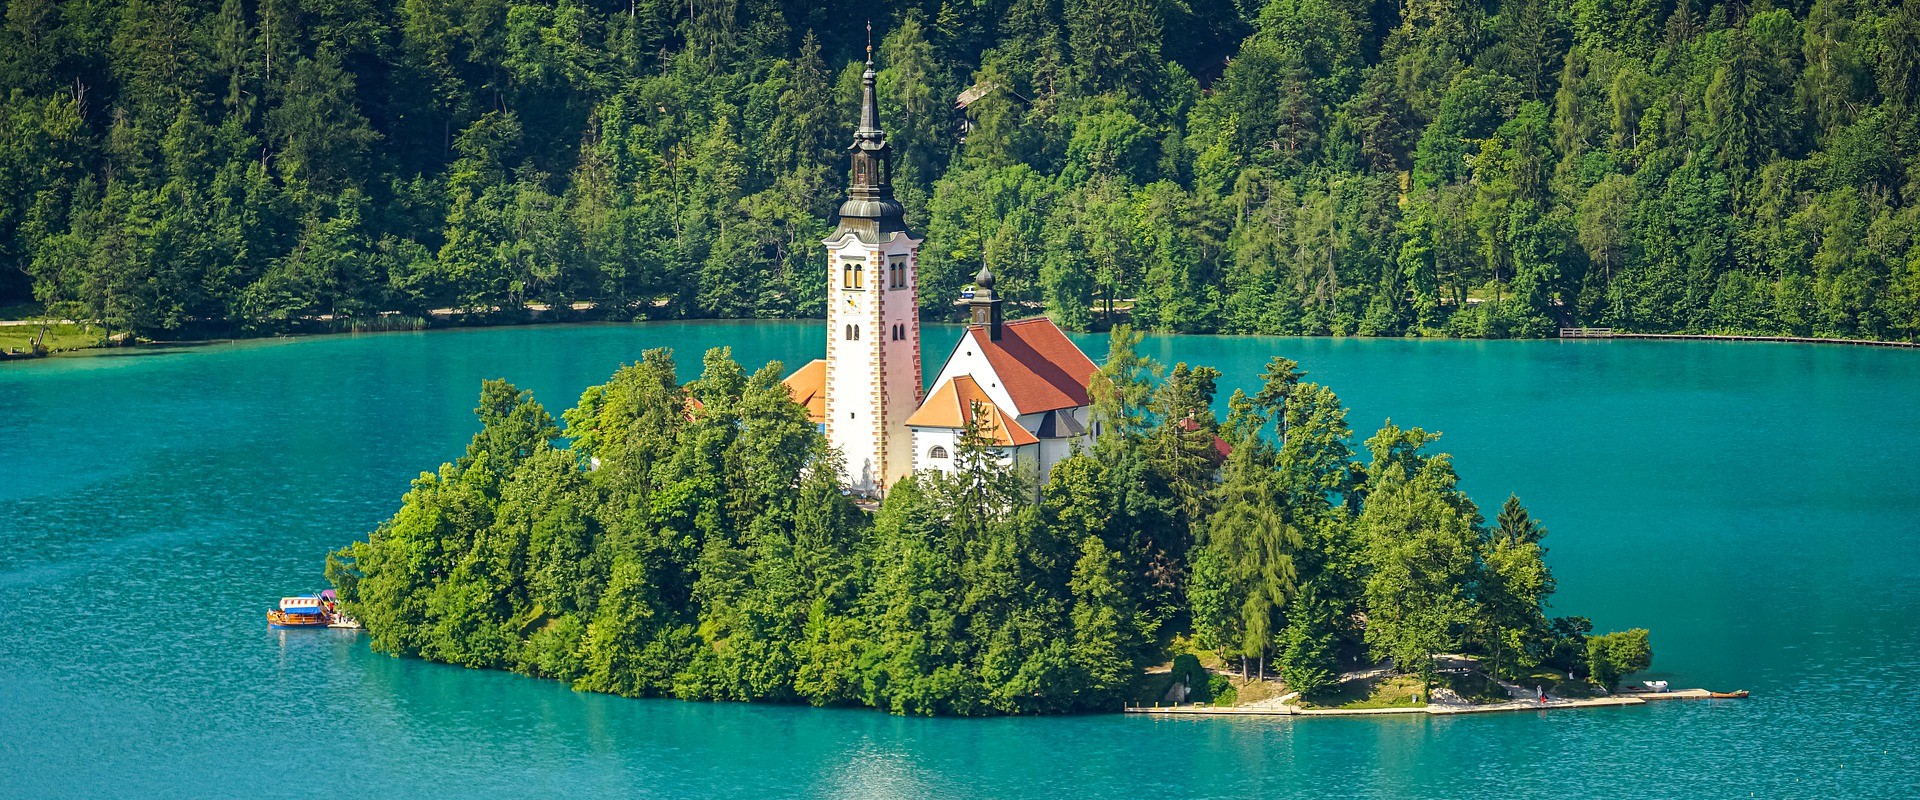 Szlovénia, Európa zöld gyöngyszeme 